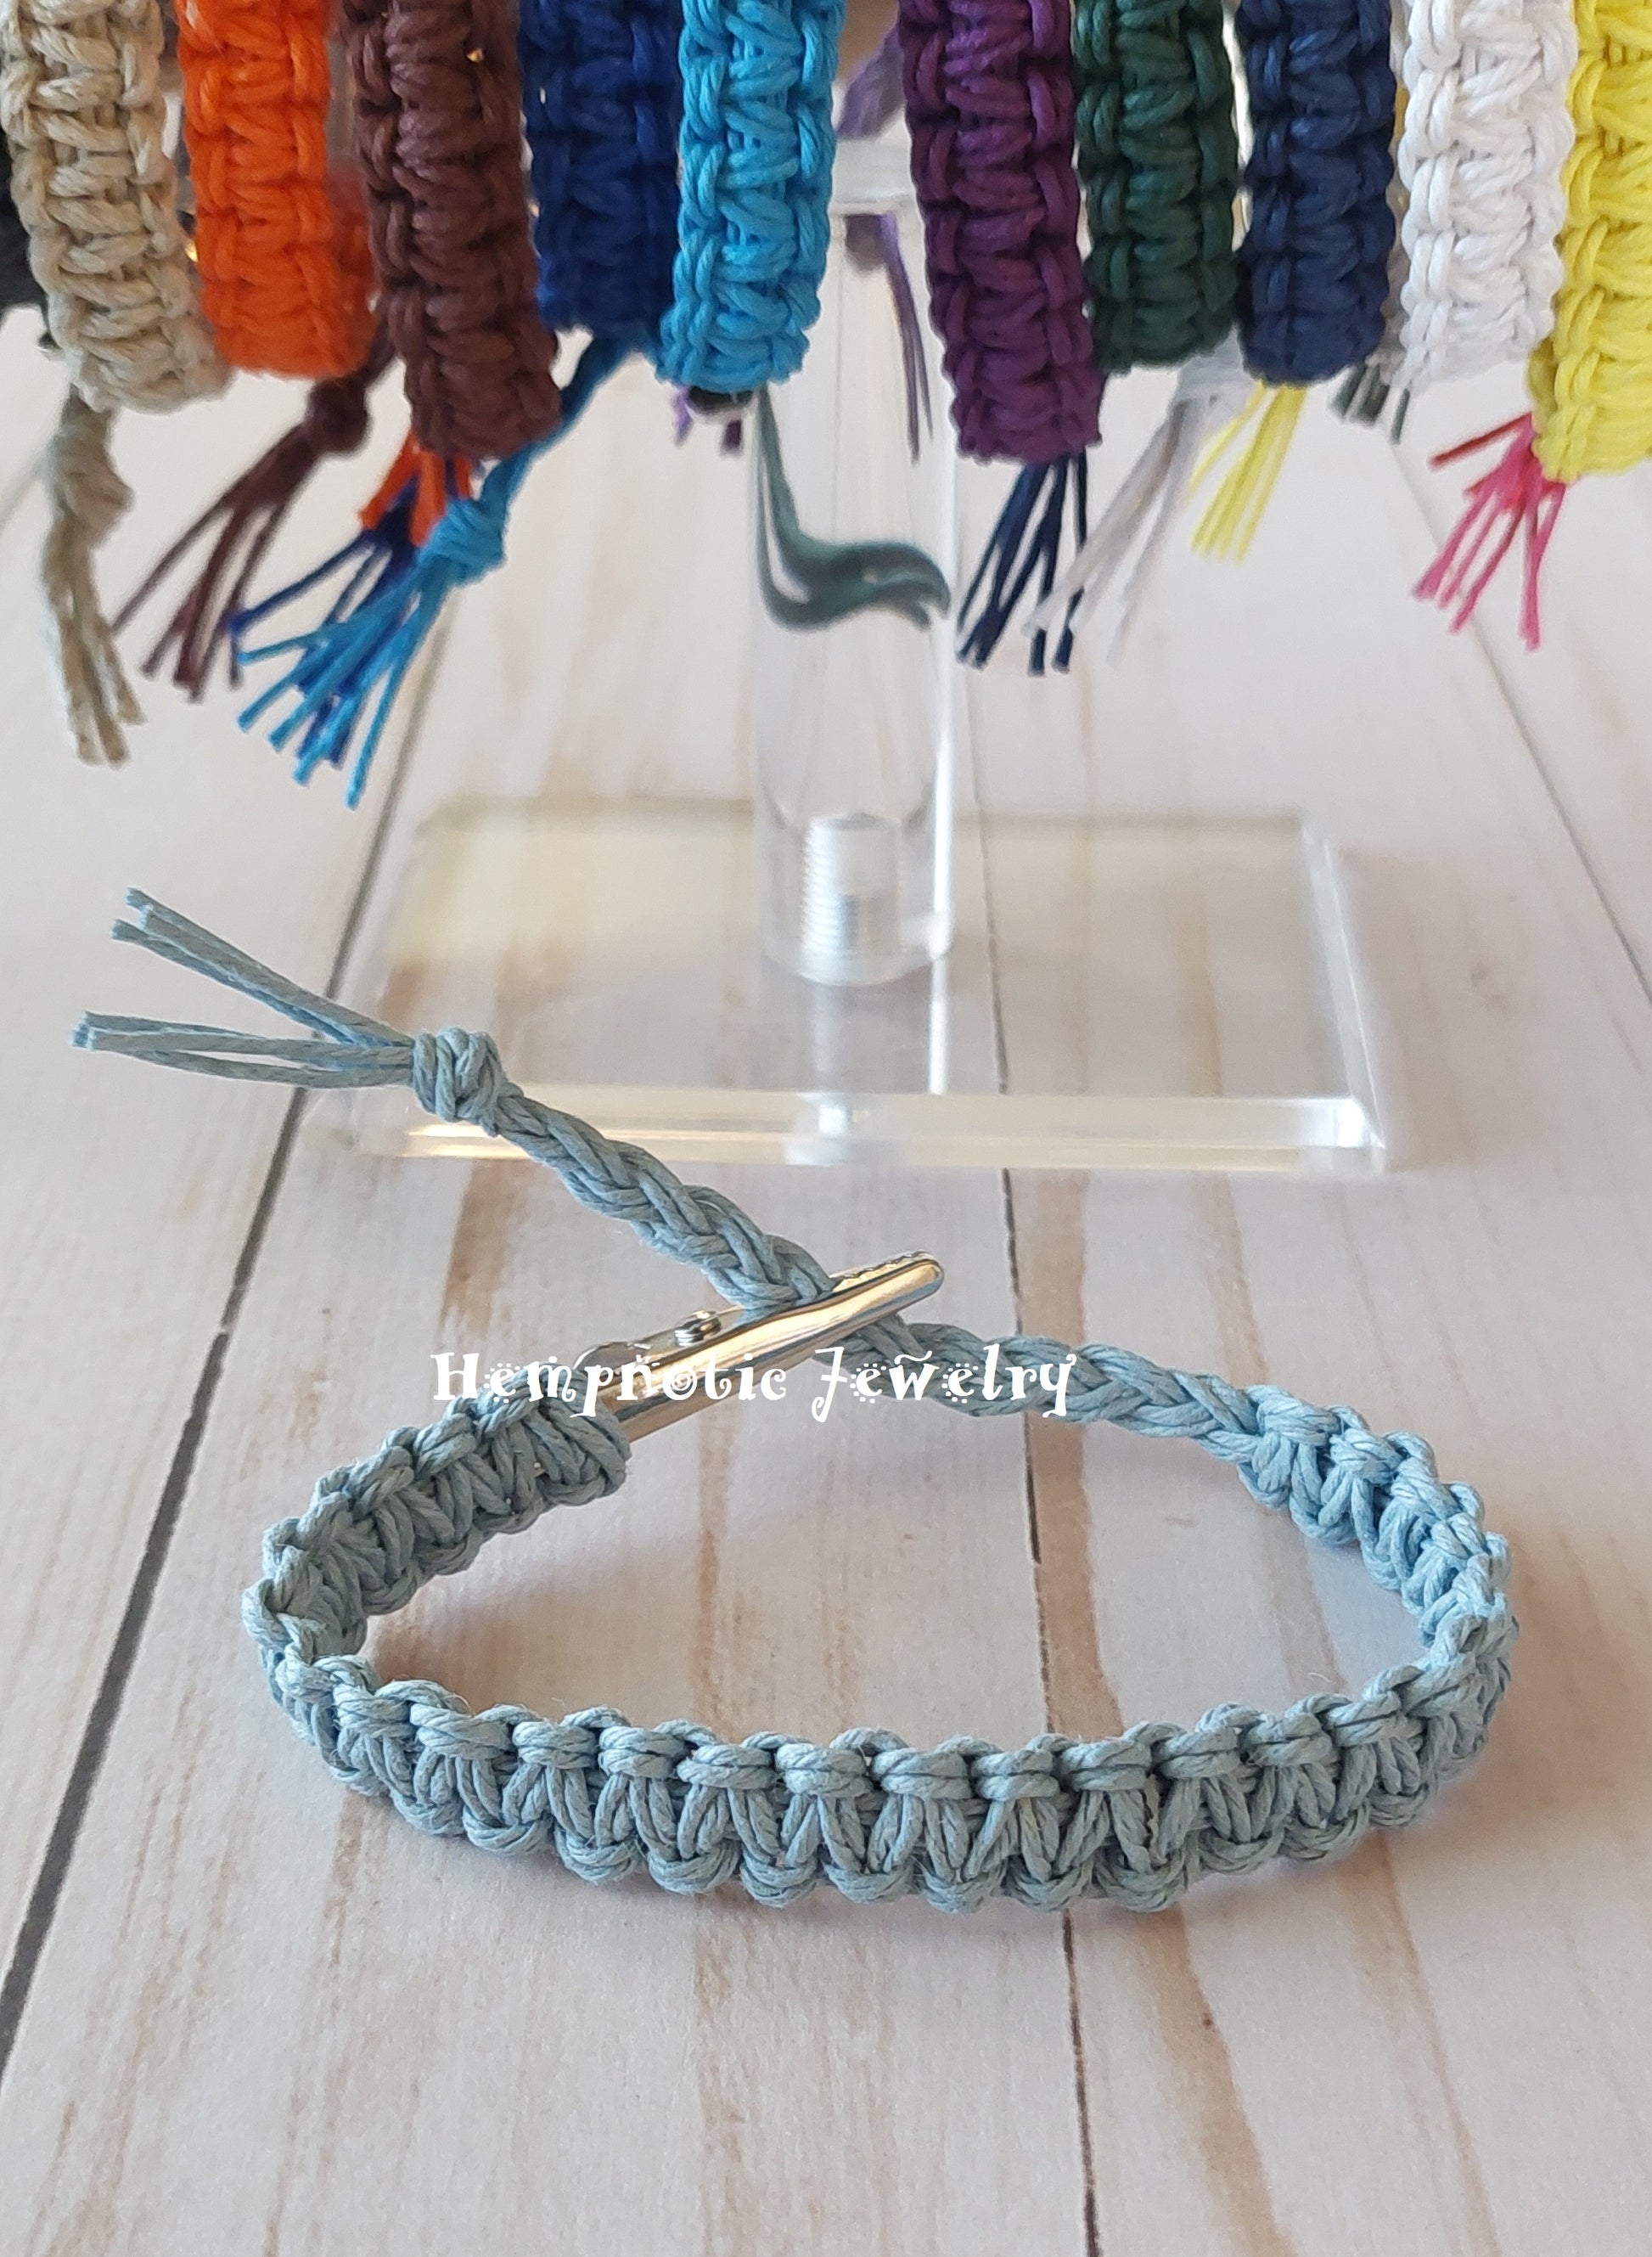 roach clip light blue hemp bracelet with alligator clip clasp